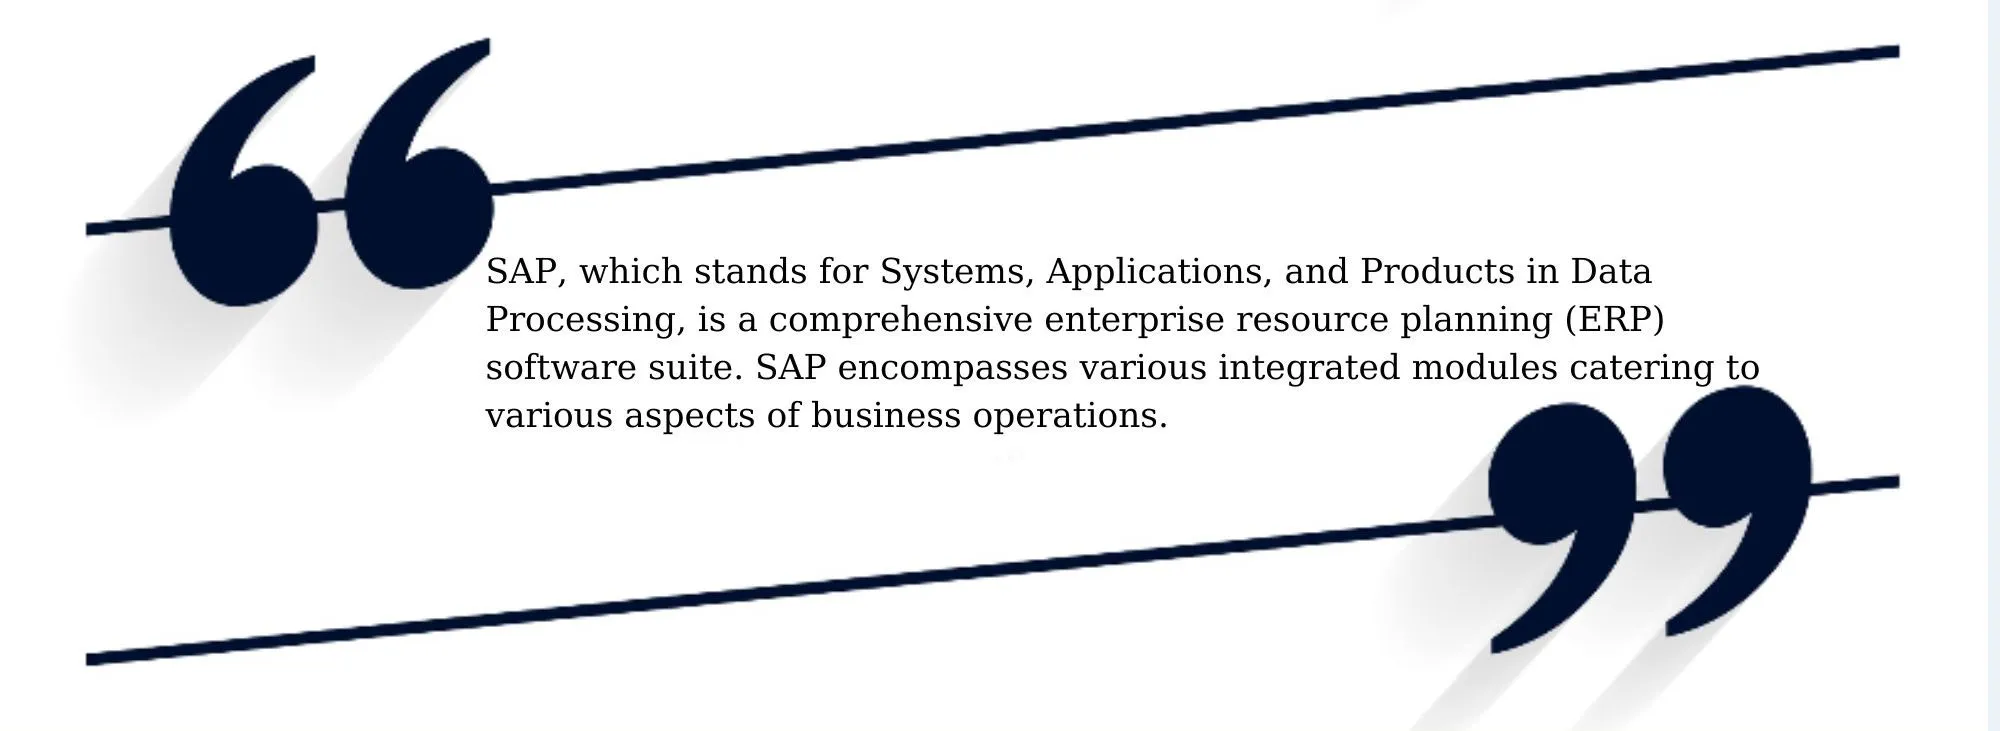 SAP definition